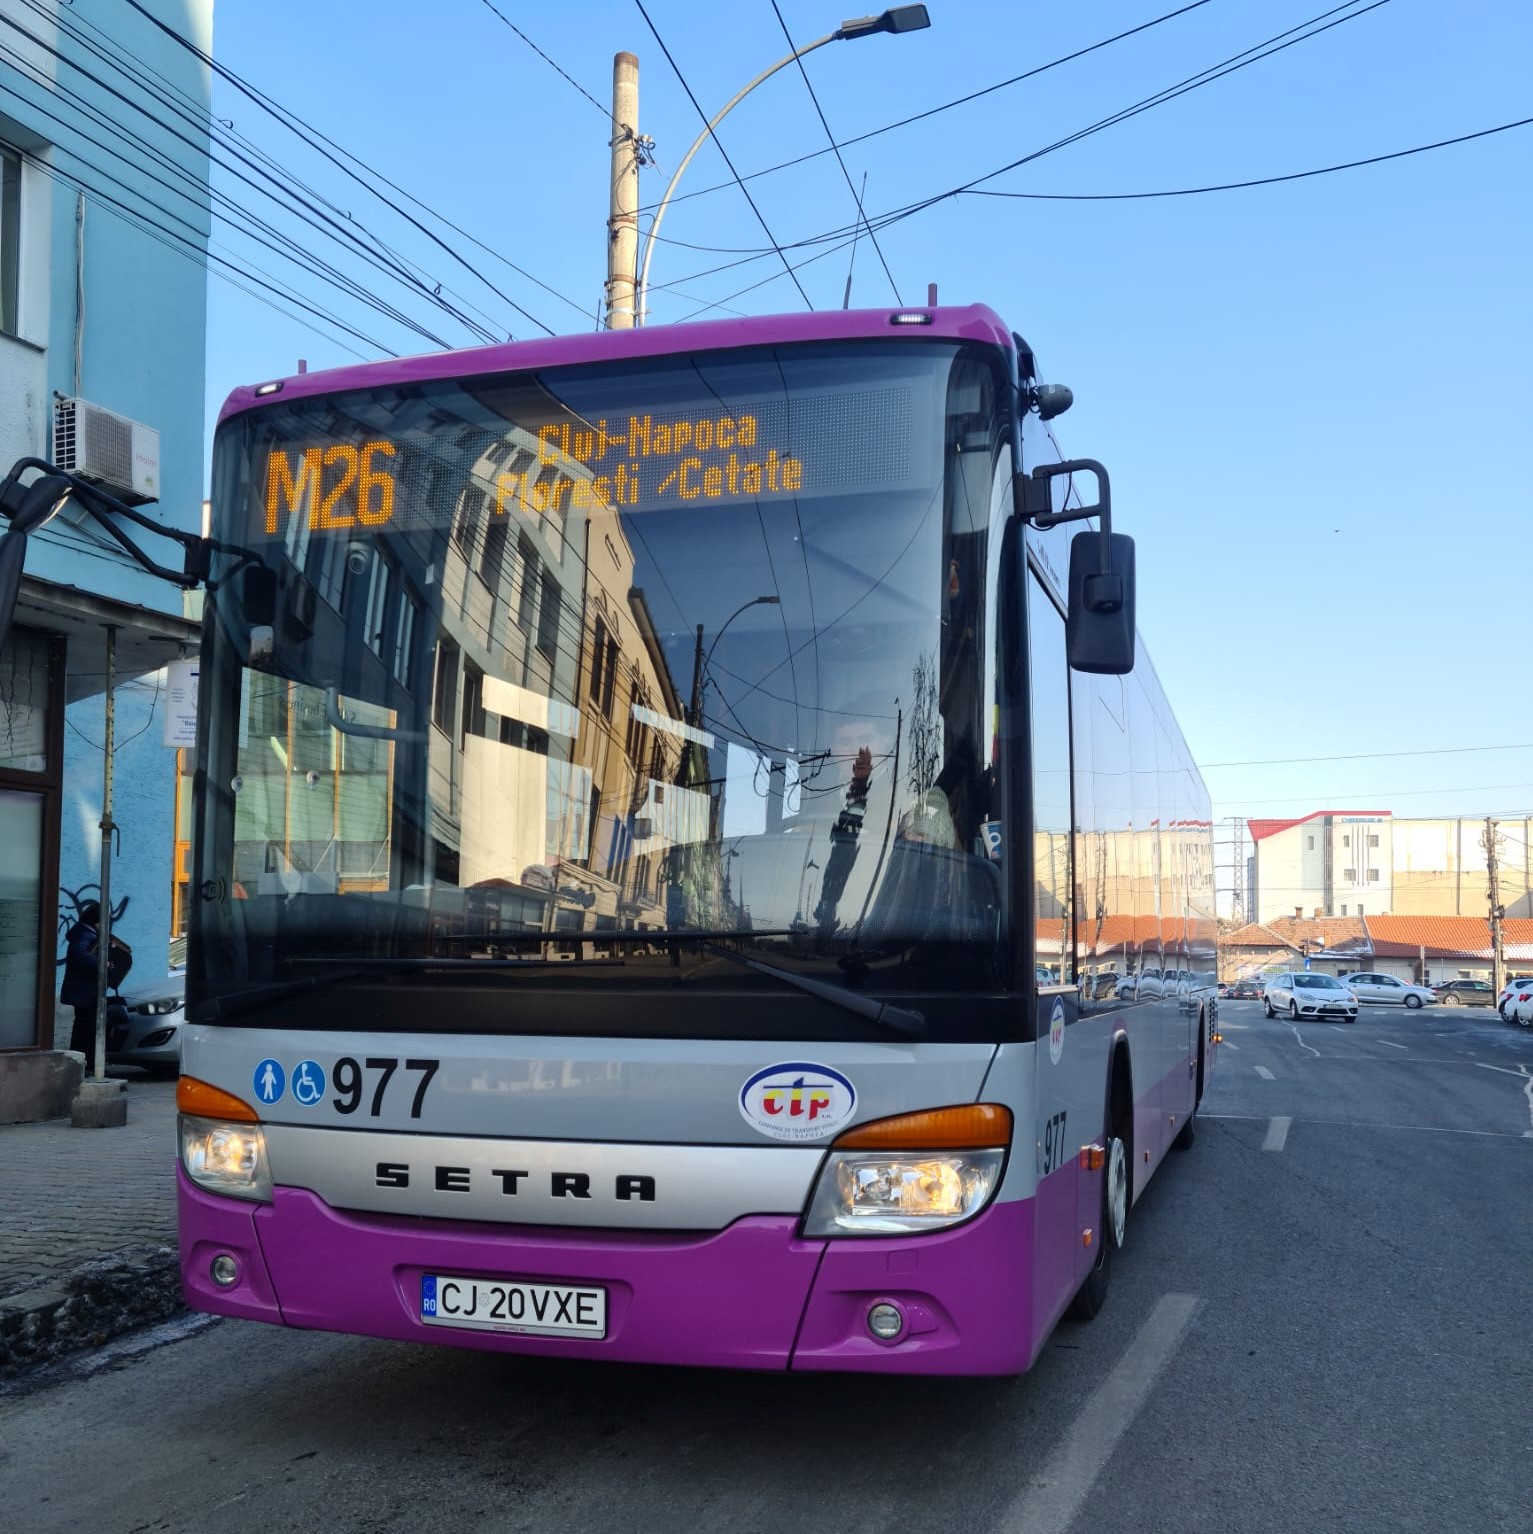 În cazul extinderii transportului CTP, primăriile ar trebui să își asume acoperirea unor costuri suplimentare. FOTO: Facebook/ CTP Cluj